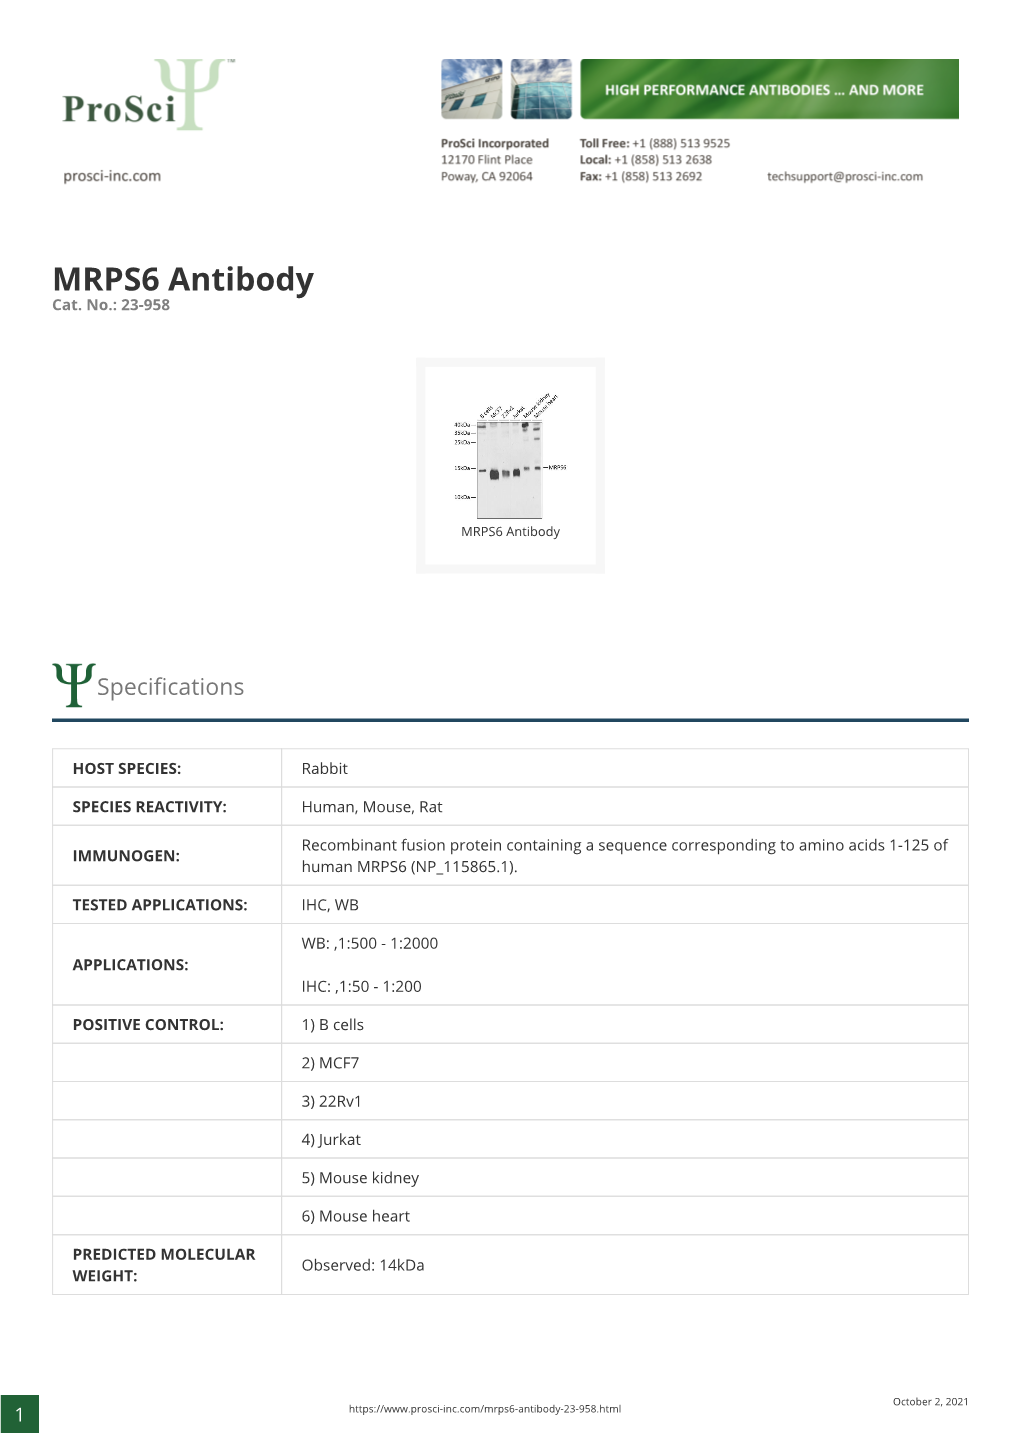 MRPS6 Antibody Cat